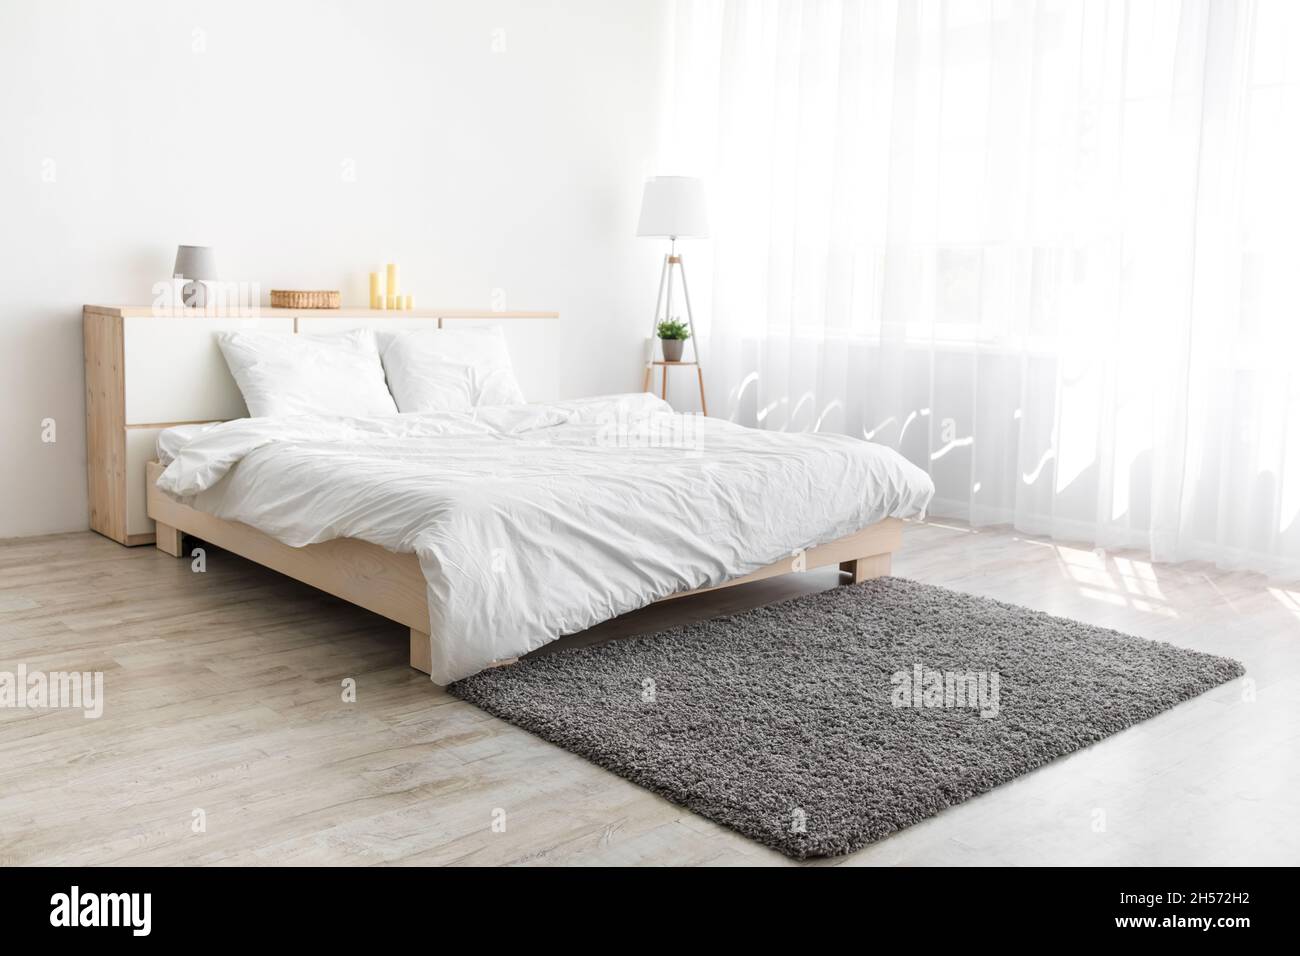 Großes Bett mit bequemer Bettwäsche, weicher grauer Teppich, Lampe auf dem Boden, Möbel mit Accessoires Stockfoto